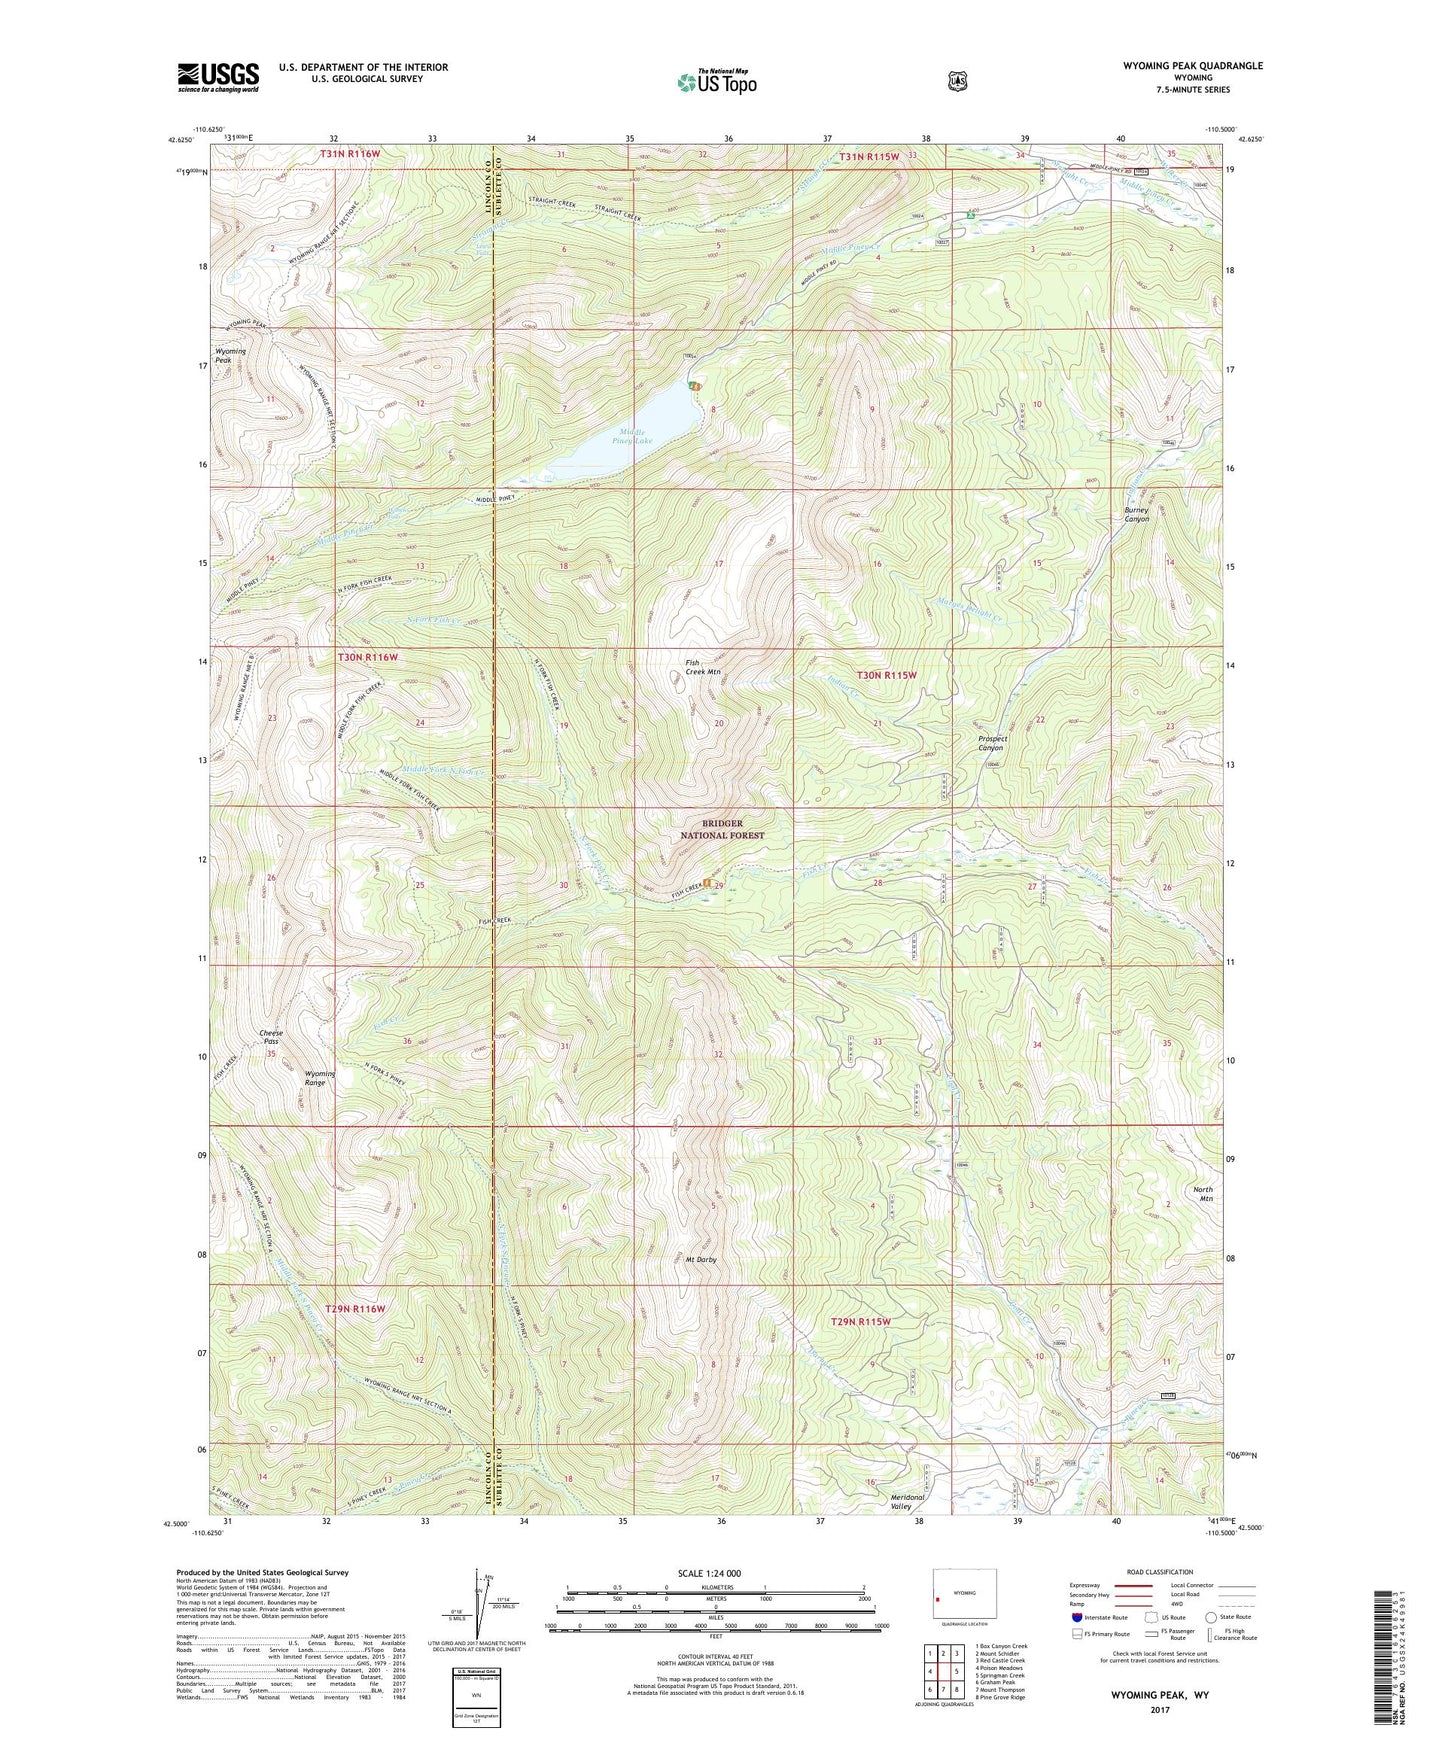 Wyoming Peak Wyoming US Topo Map Image